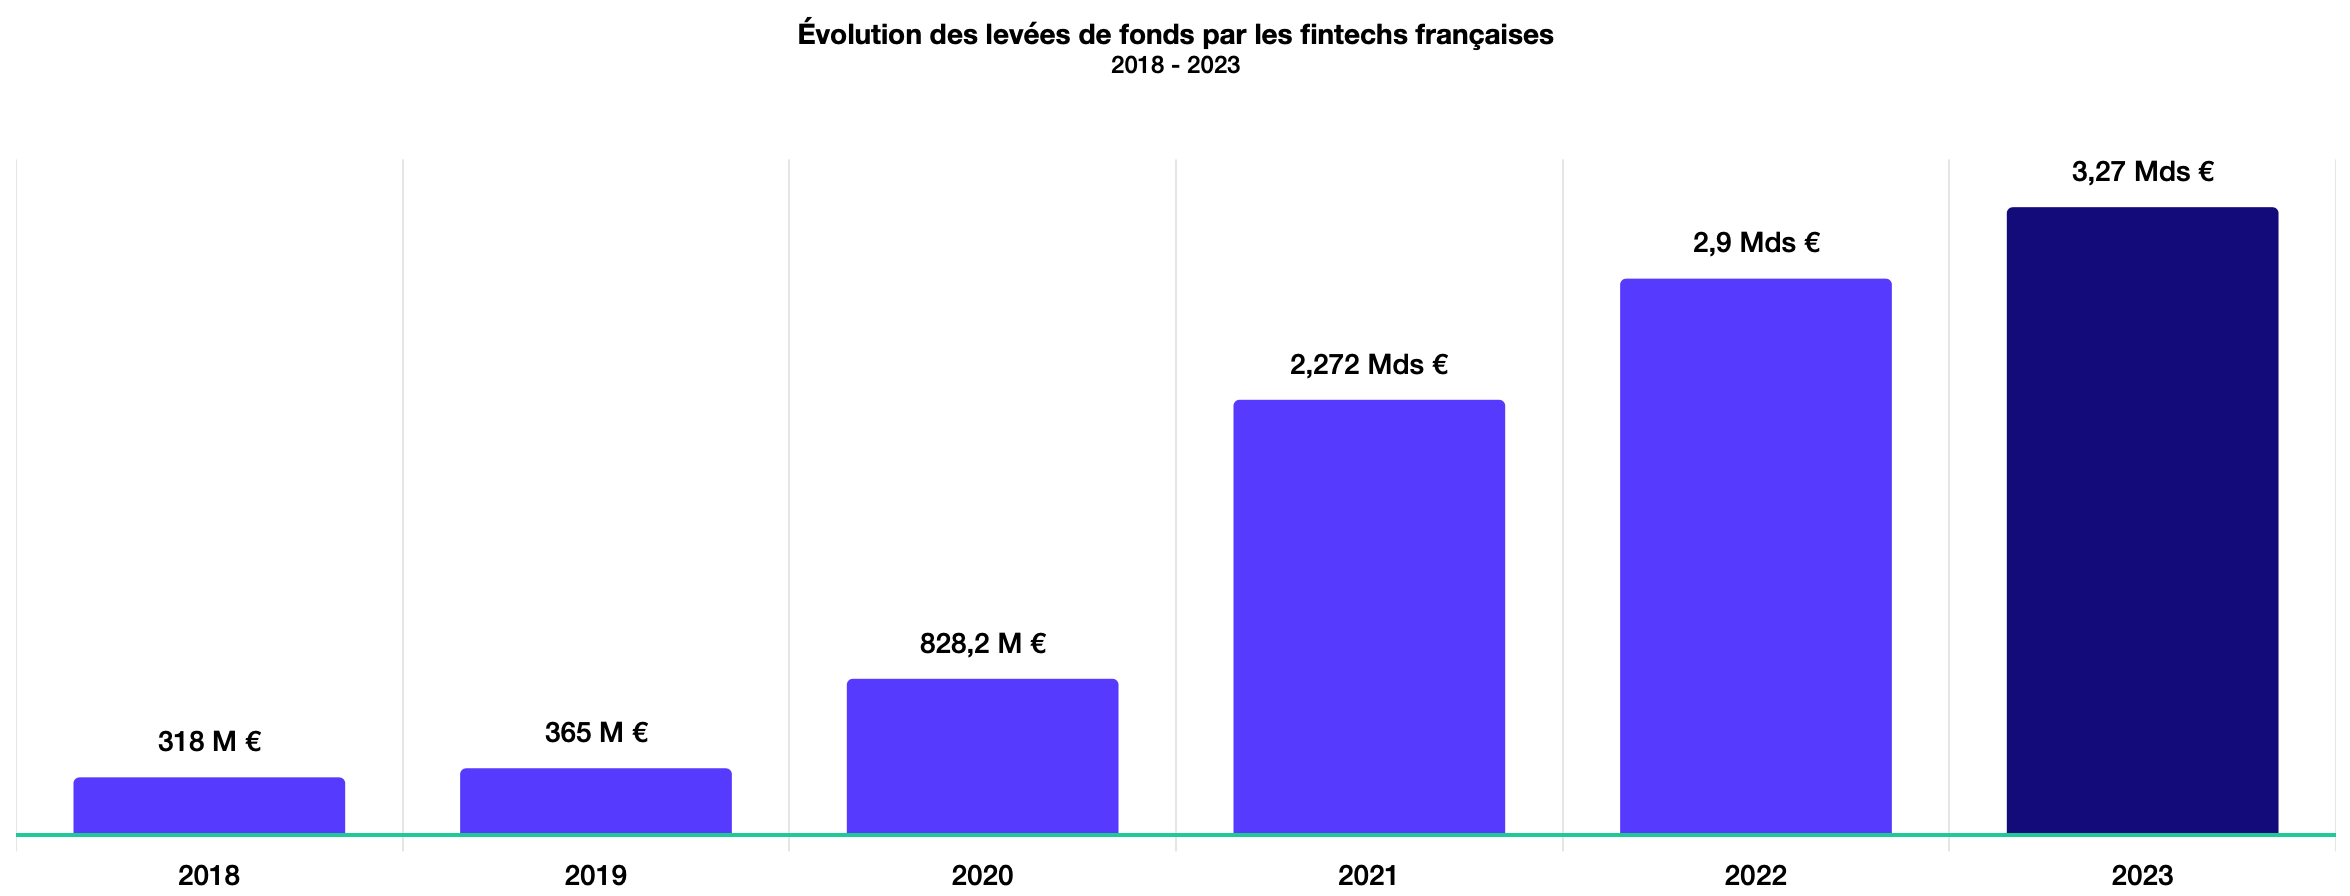 Les levées de fonds des fintechs françaises devraient encore augmenter de 12,8 % en 2023